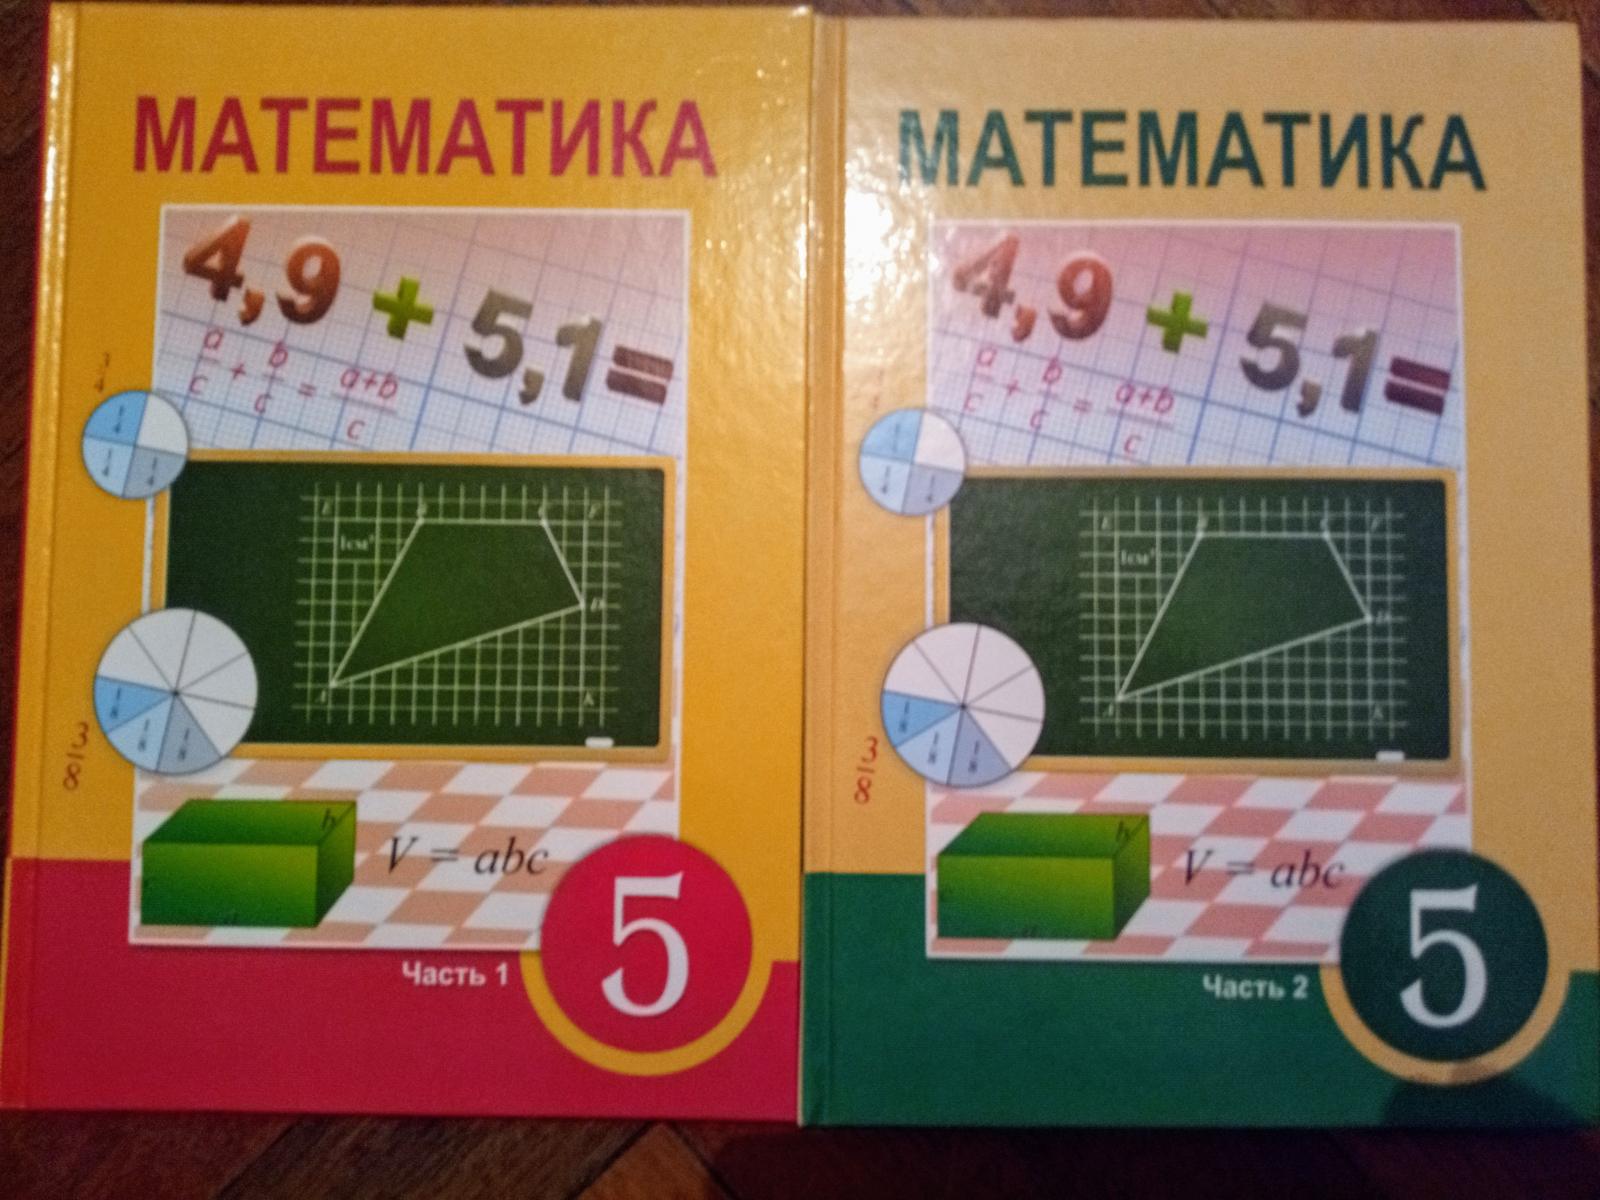 Матем 5 класс 6.124. 2+Учебники+атамура. Матем 5 кл 2 часть 5.511. Математика 6 класс атамура 2006 год. Матем 5.510.